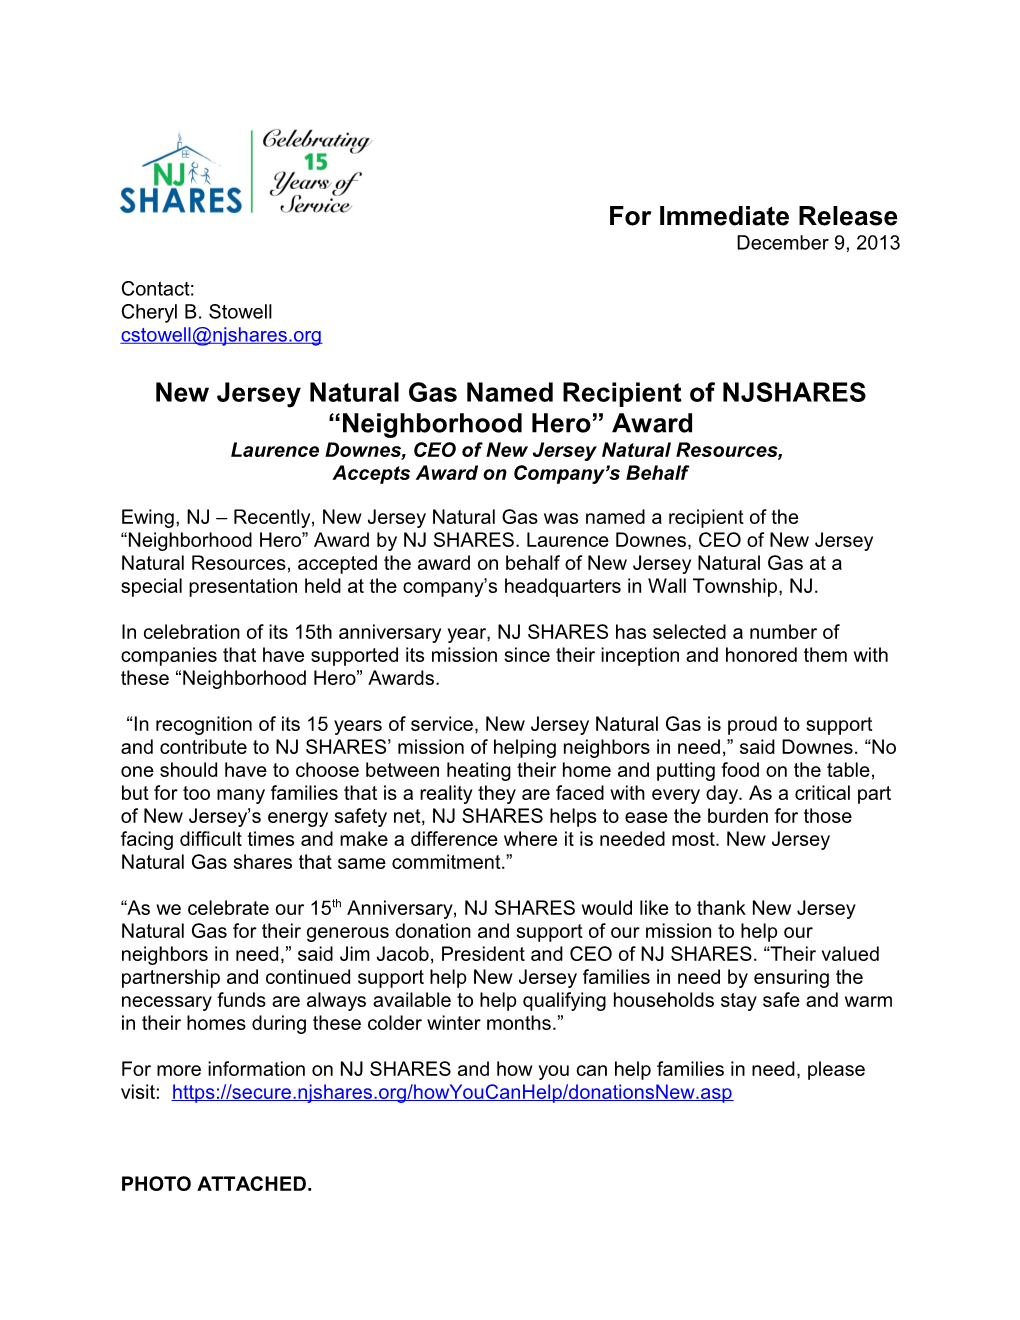 New Jersey Natural Gas Named Recipient of NJSHARES Neighborhood Hero Award